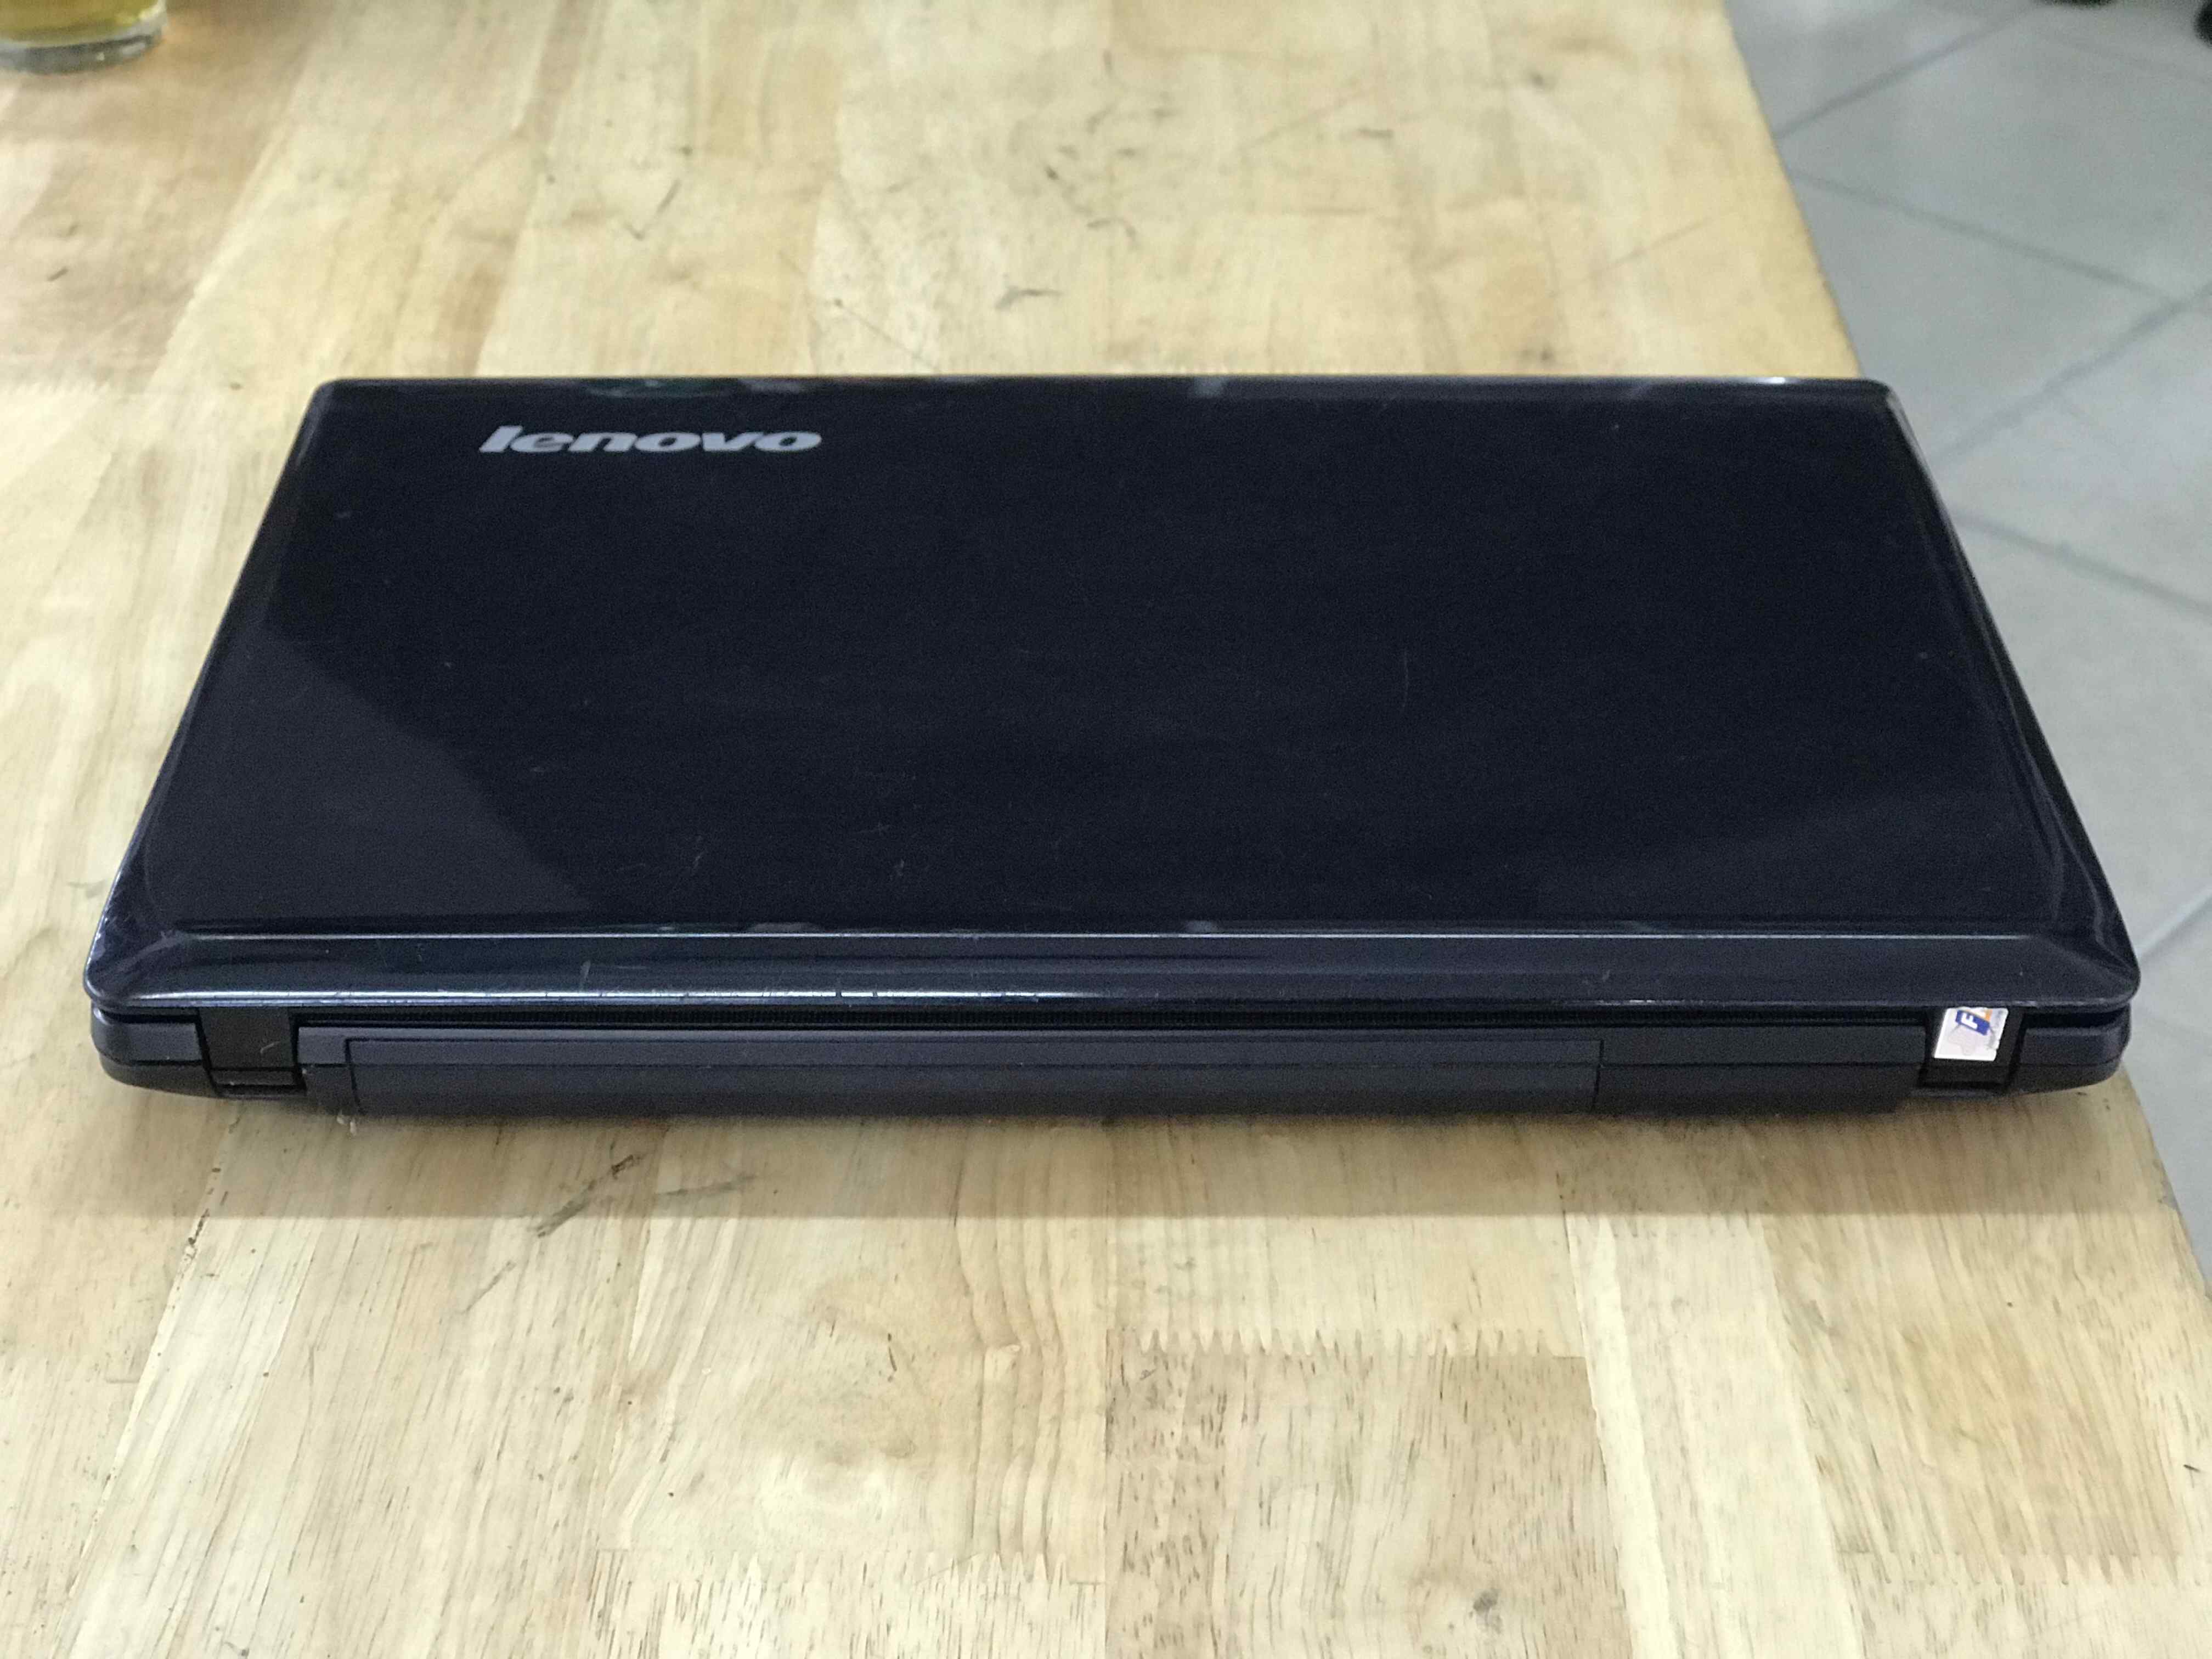 bán laptop cũ lenovo g460 tại hải dương